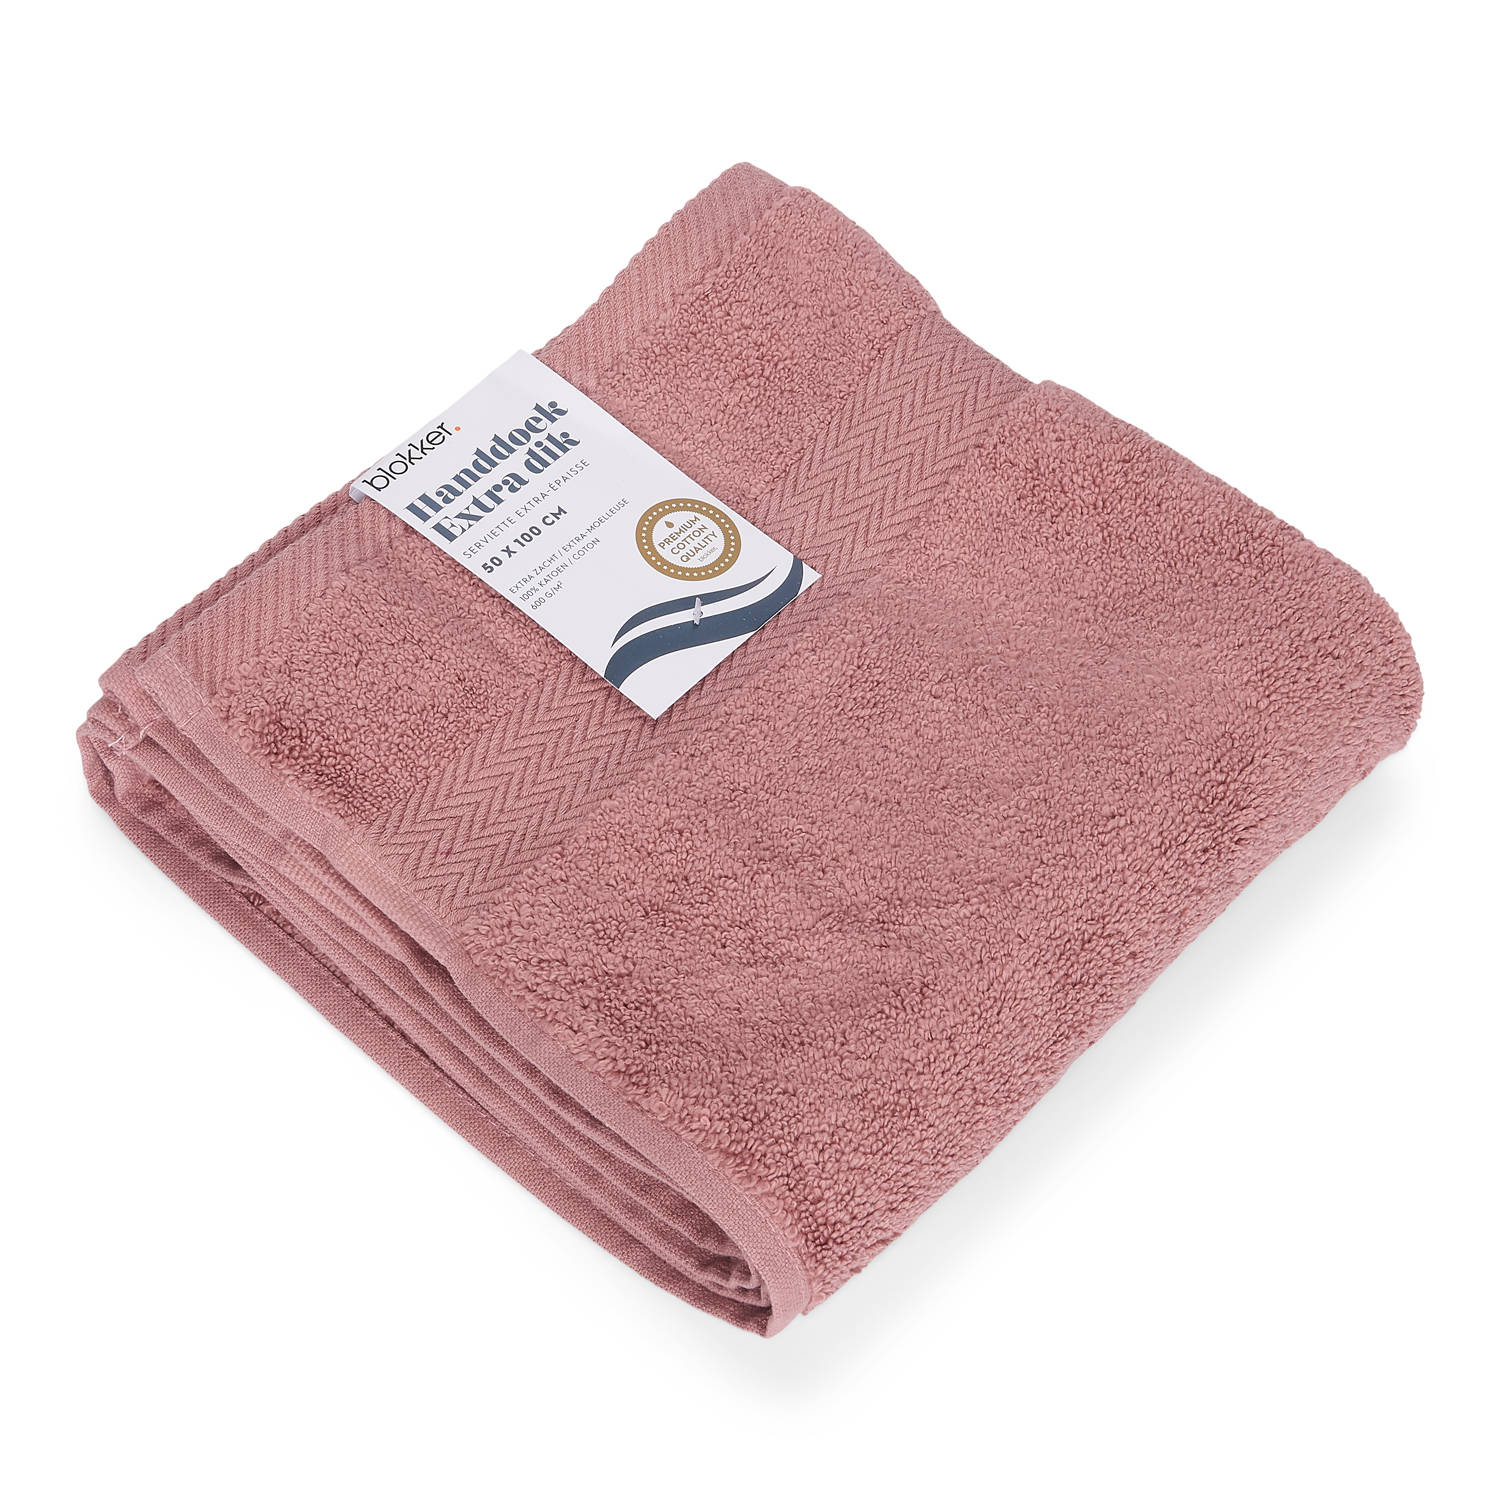 Voorschrift oor volgens Blokker handdoek 600g - roze 50x100 cm | Blokker